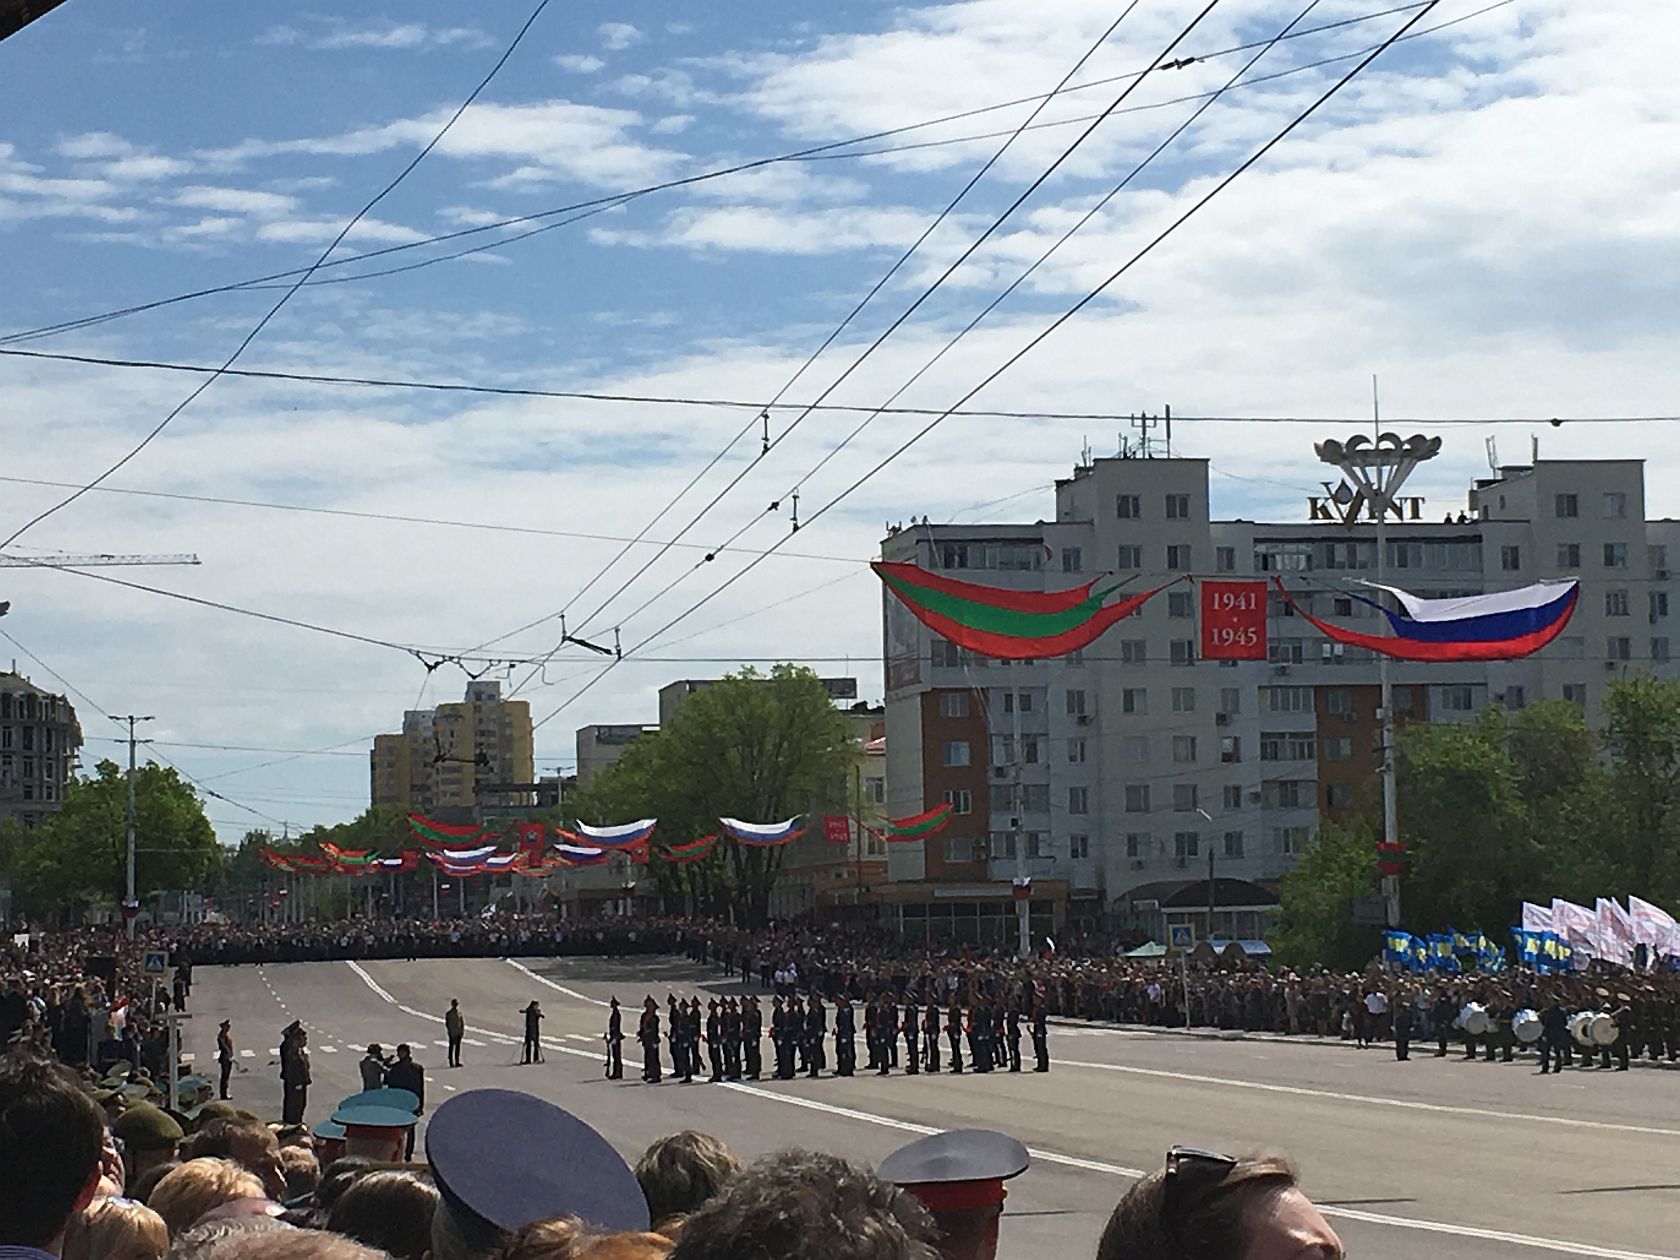 Незважаючи на помпезні приготування до параду і зрослу популярність свята у самих придністровців в зв'язку з конфліктом в сусідній Україні, - парад-2017 виглядає досить скромно - в цей раз по центральній площі проїхав лише танк Т-34